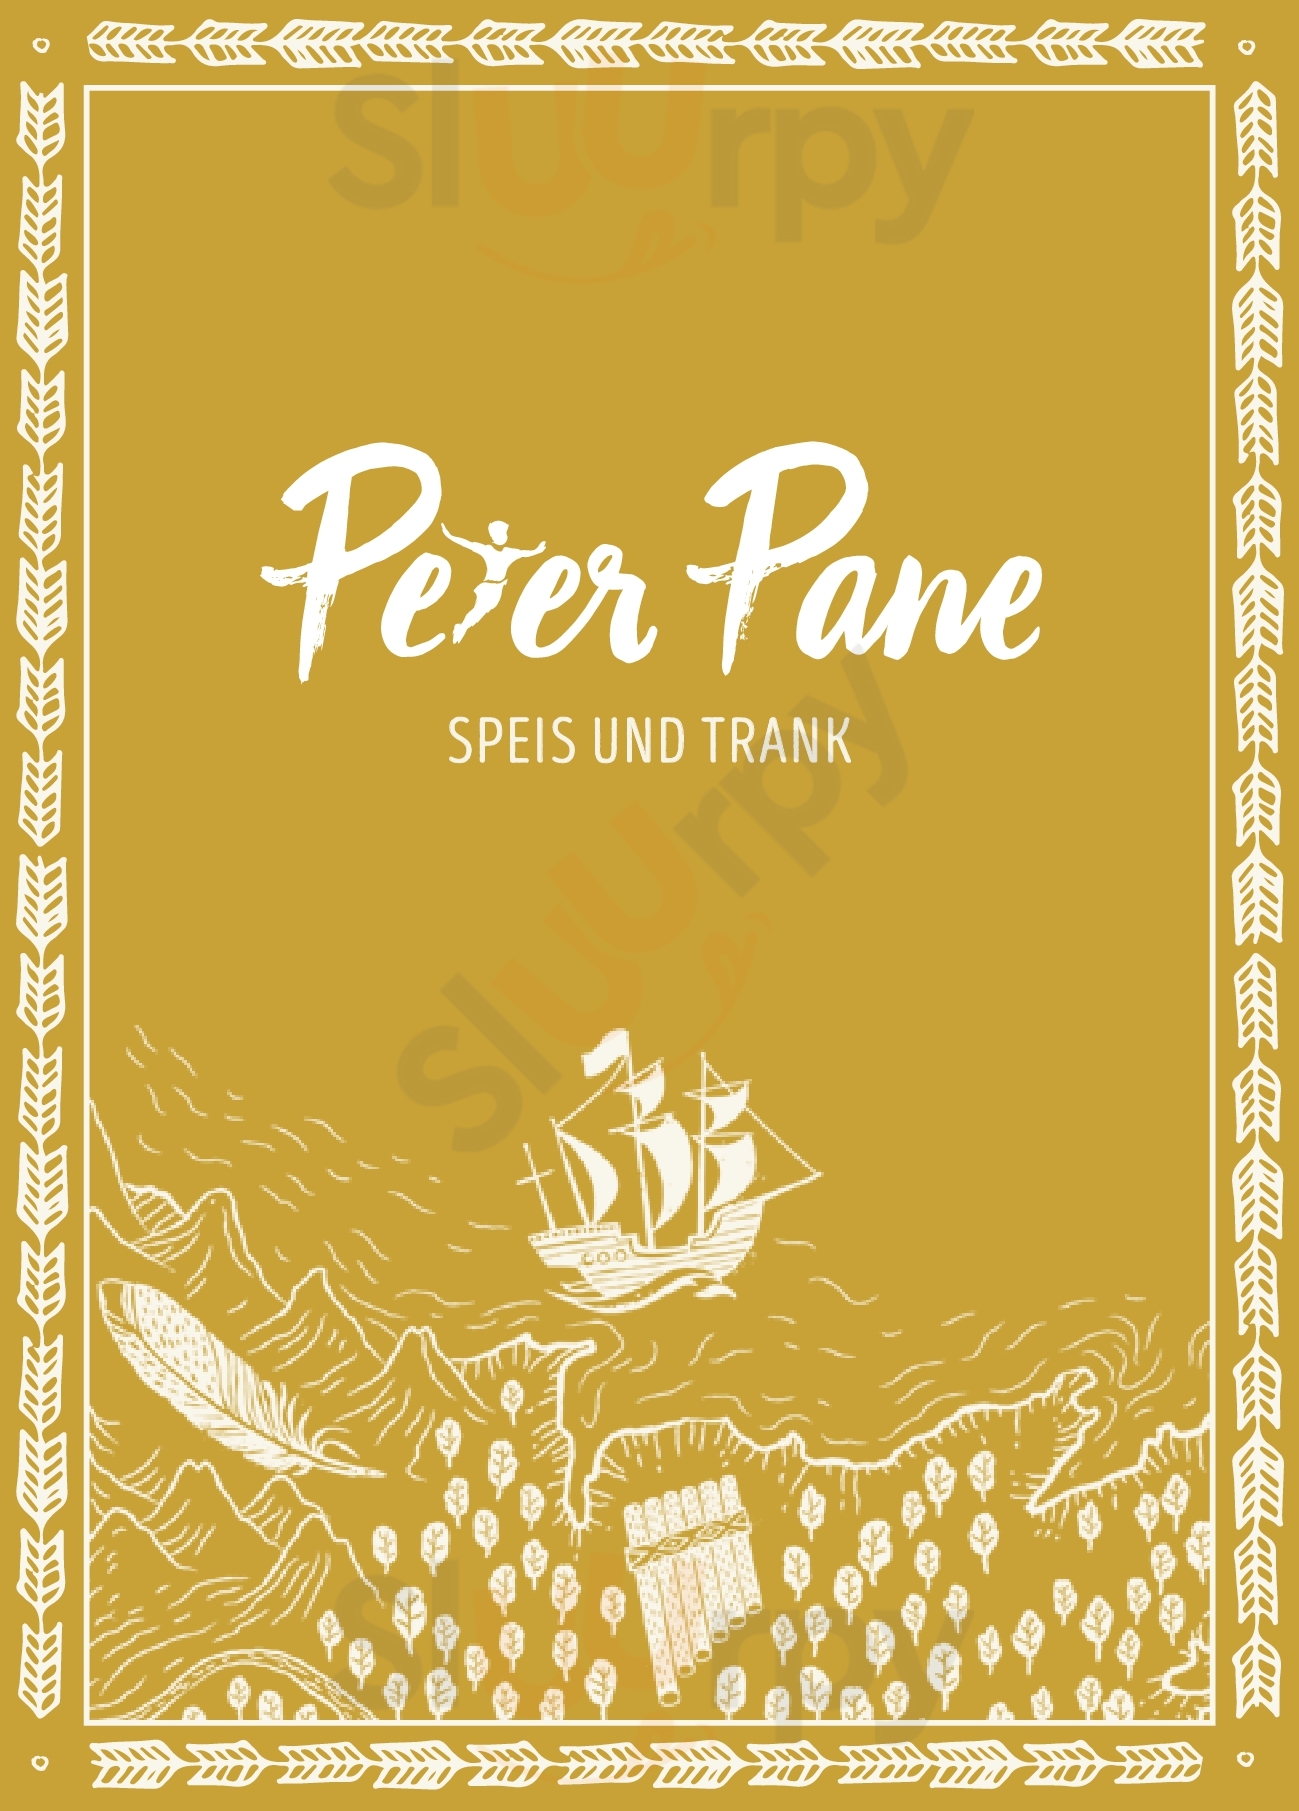 Peter Pane Burgergrill Bar Kiel Menu - 1